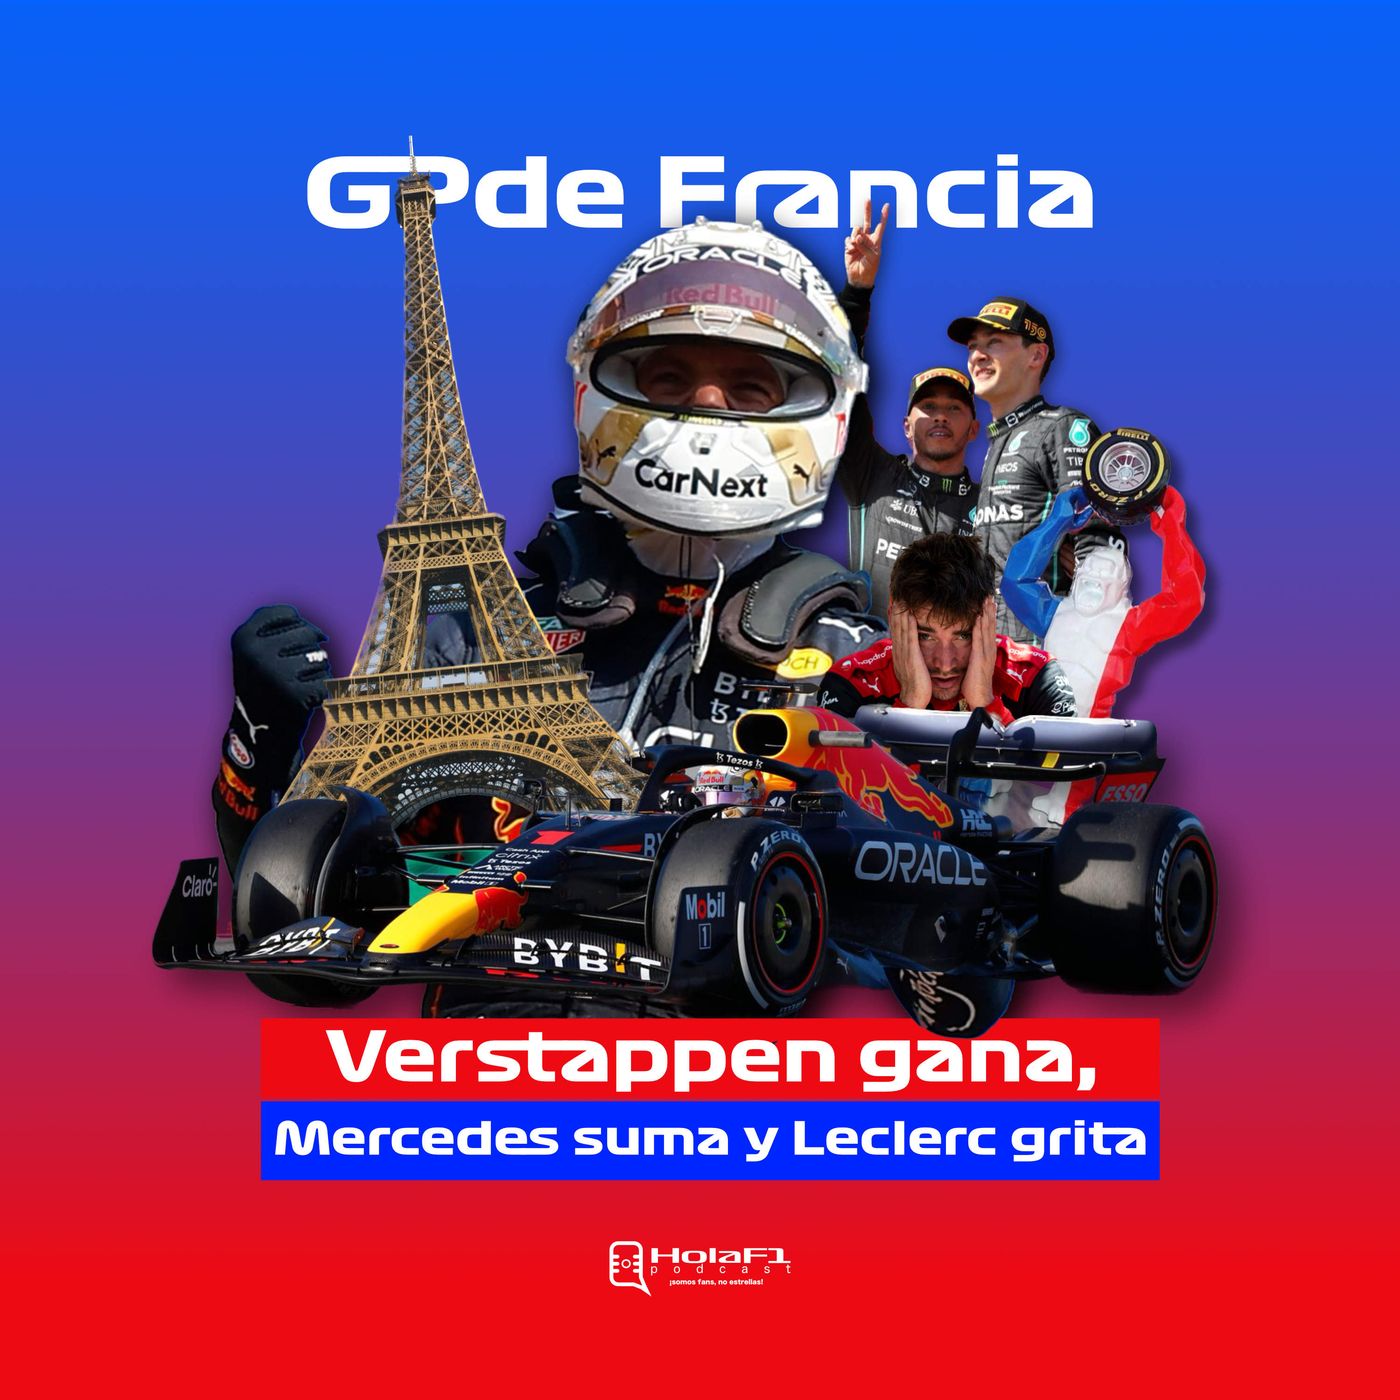 Verstappen gana, Mercedes suma y Leclerc grita 😫 GP de Francia